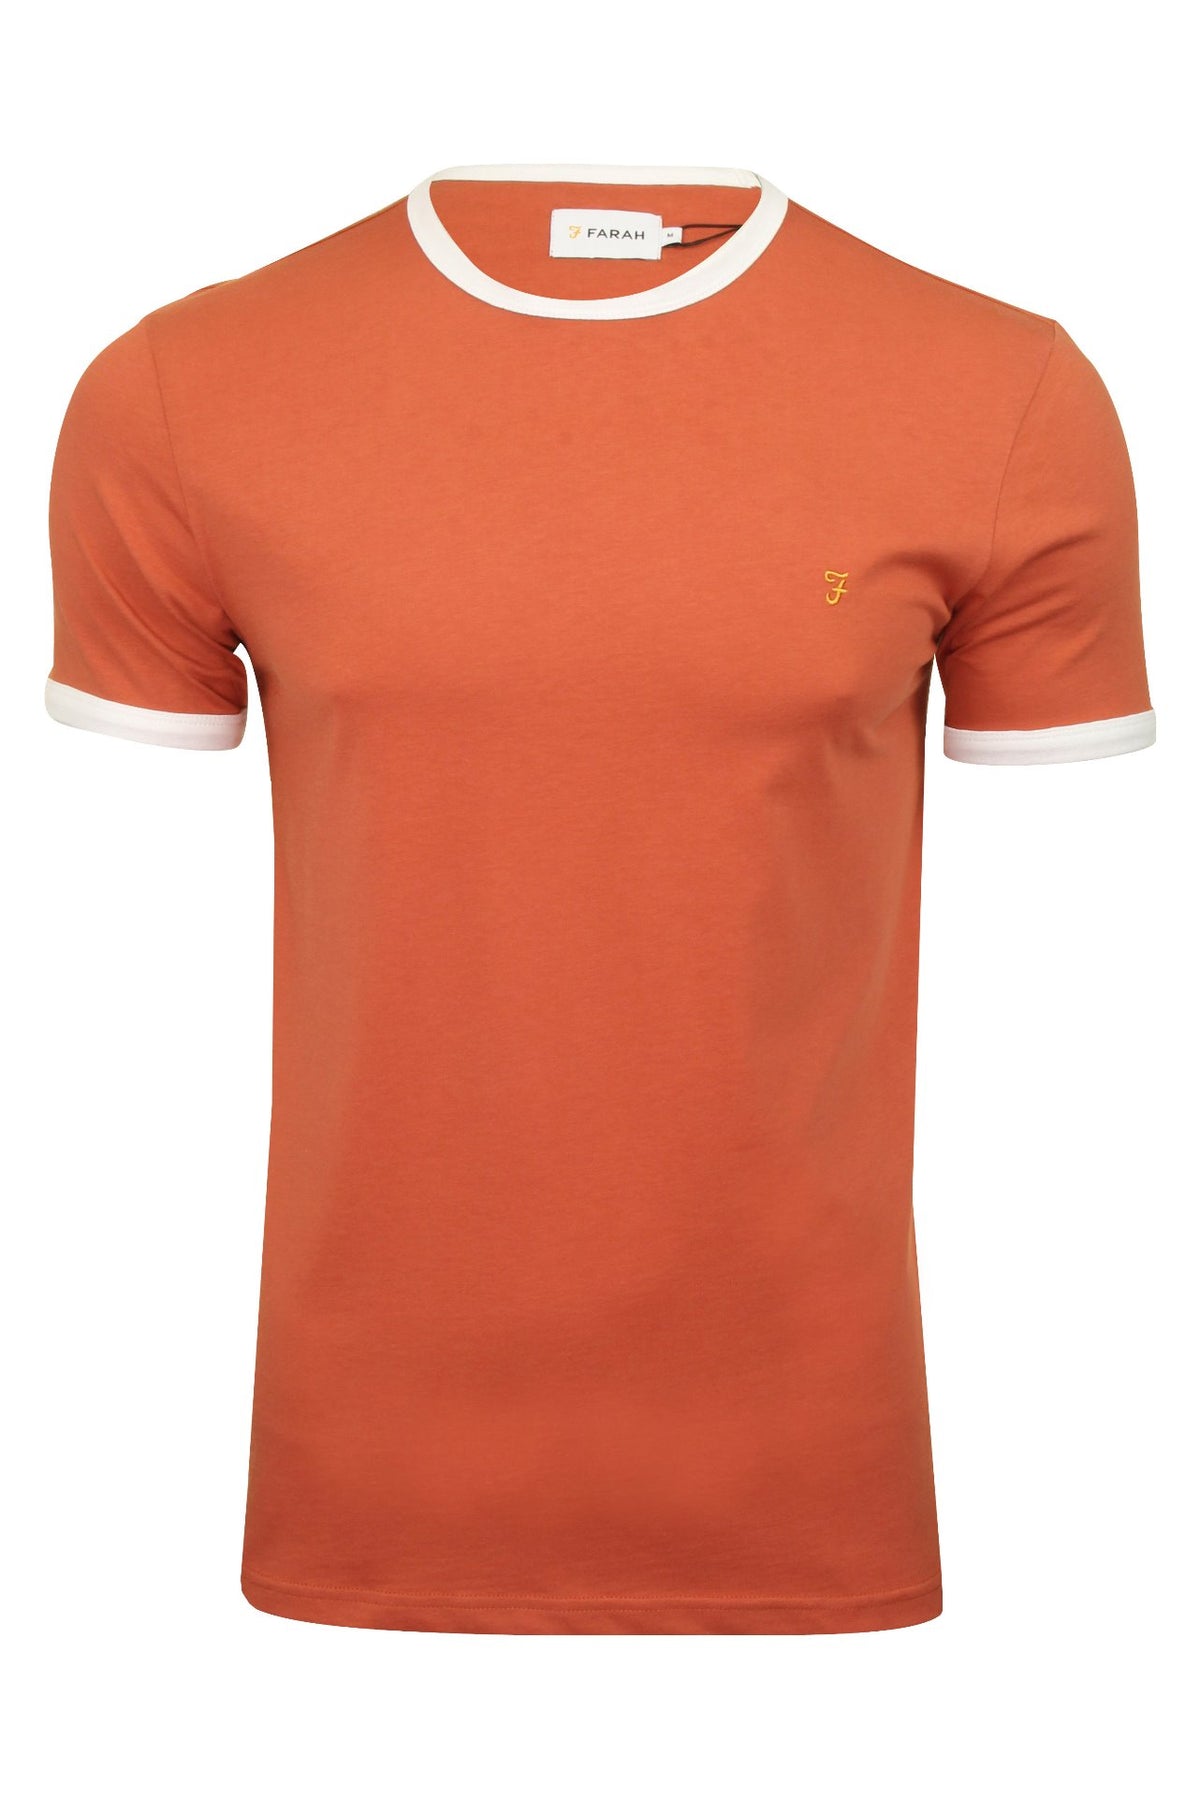 Farah Mens Crew Neck T-Shirt 'Groves Ringer Tee' - Short Sleeved, 01, F4KS60H9GP, Jalapeno